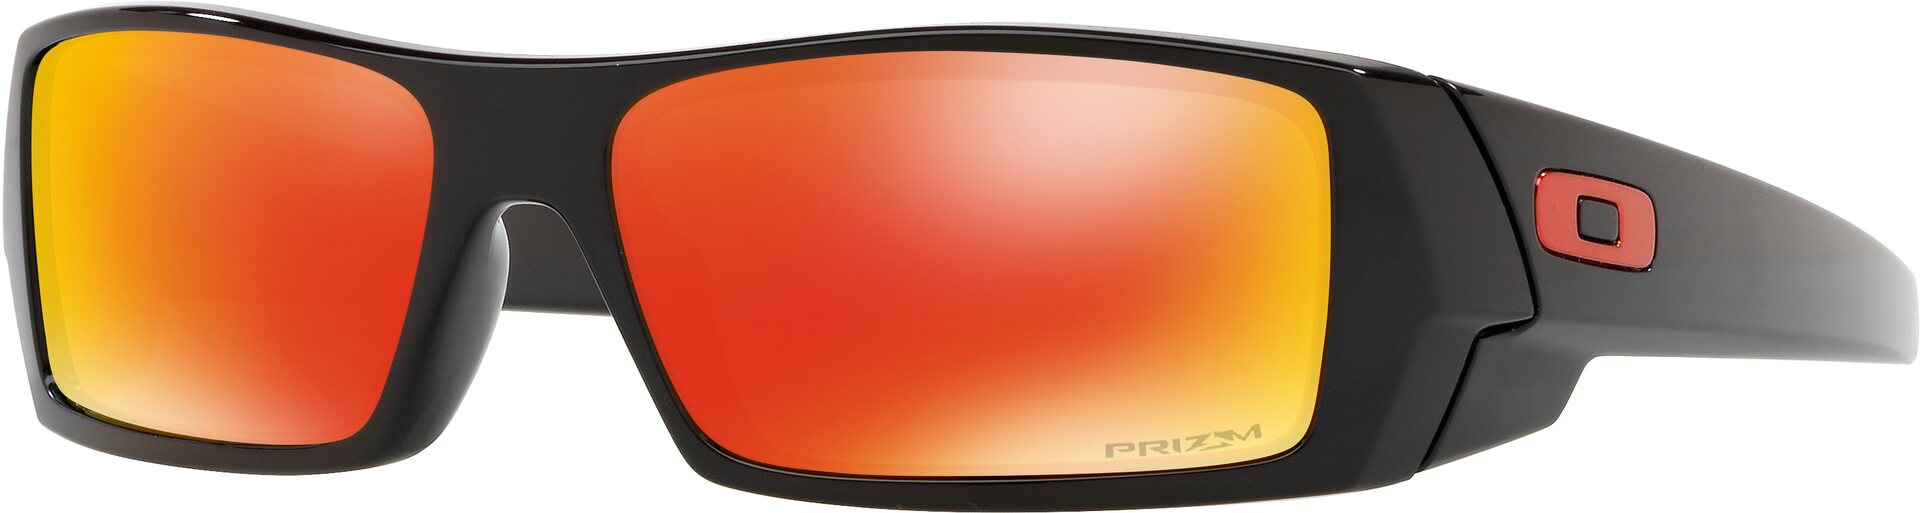 Oakley Gascan, Polished Black w/ Prizm Ruby | Oakley Gascan Sunglasses |   English